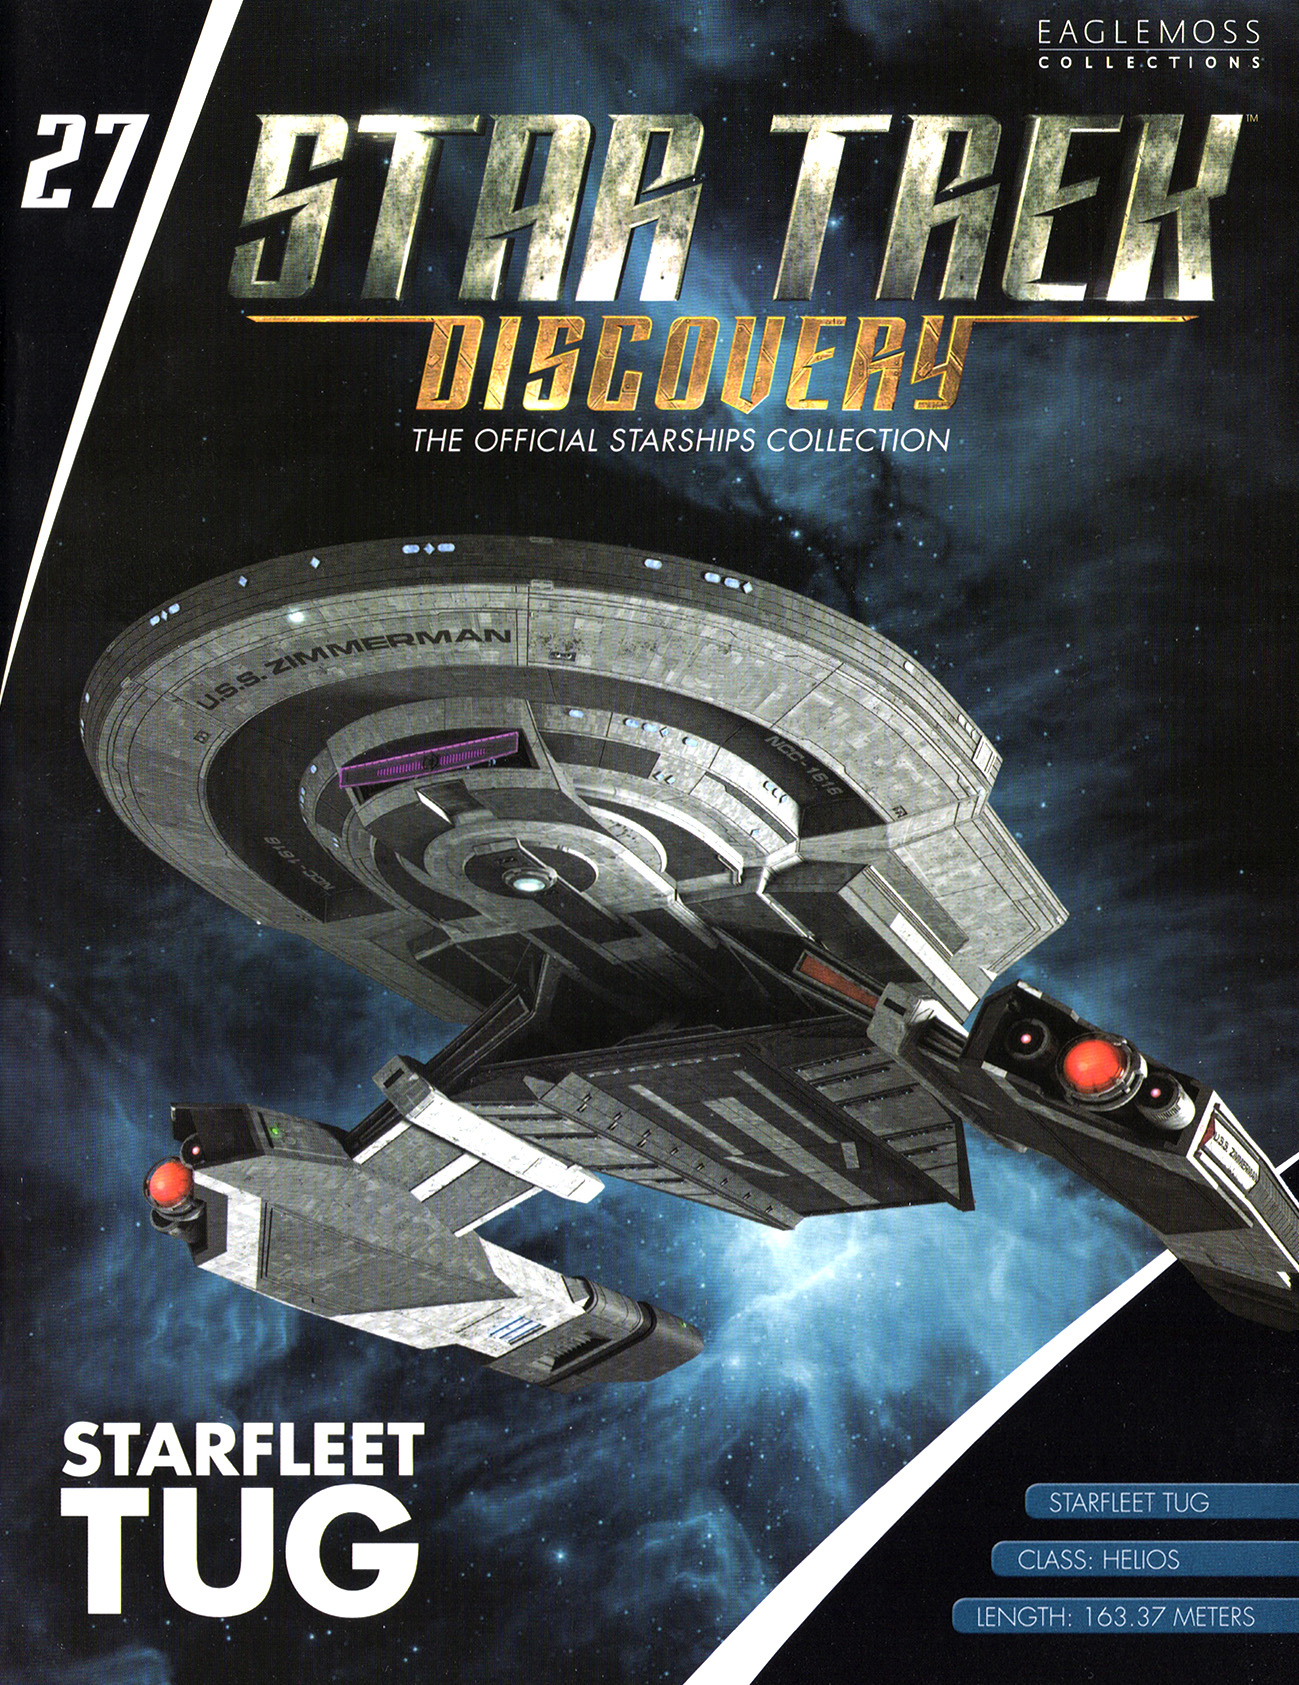 Eaglemoss Star Trek Starships Discovery Issue 27